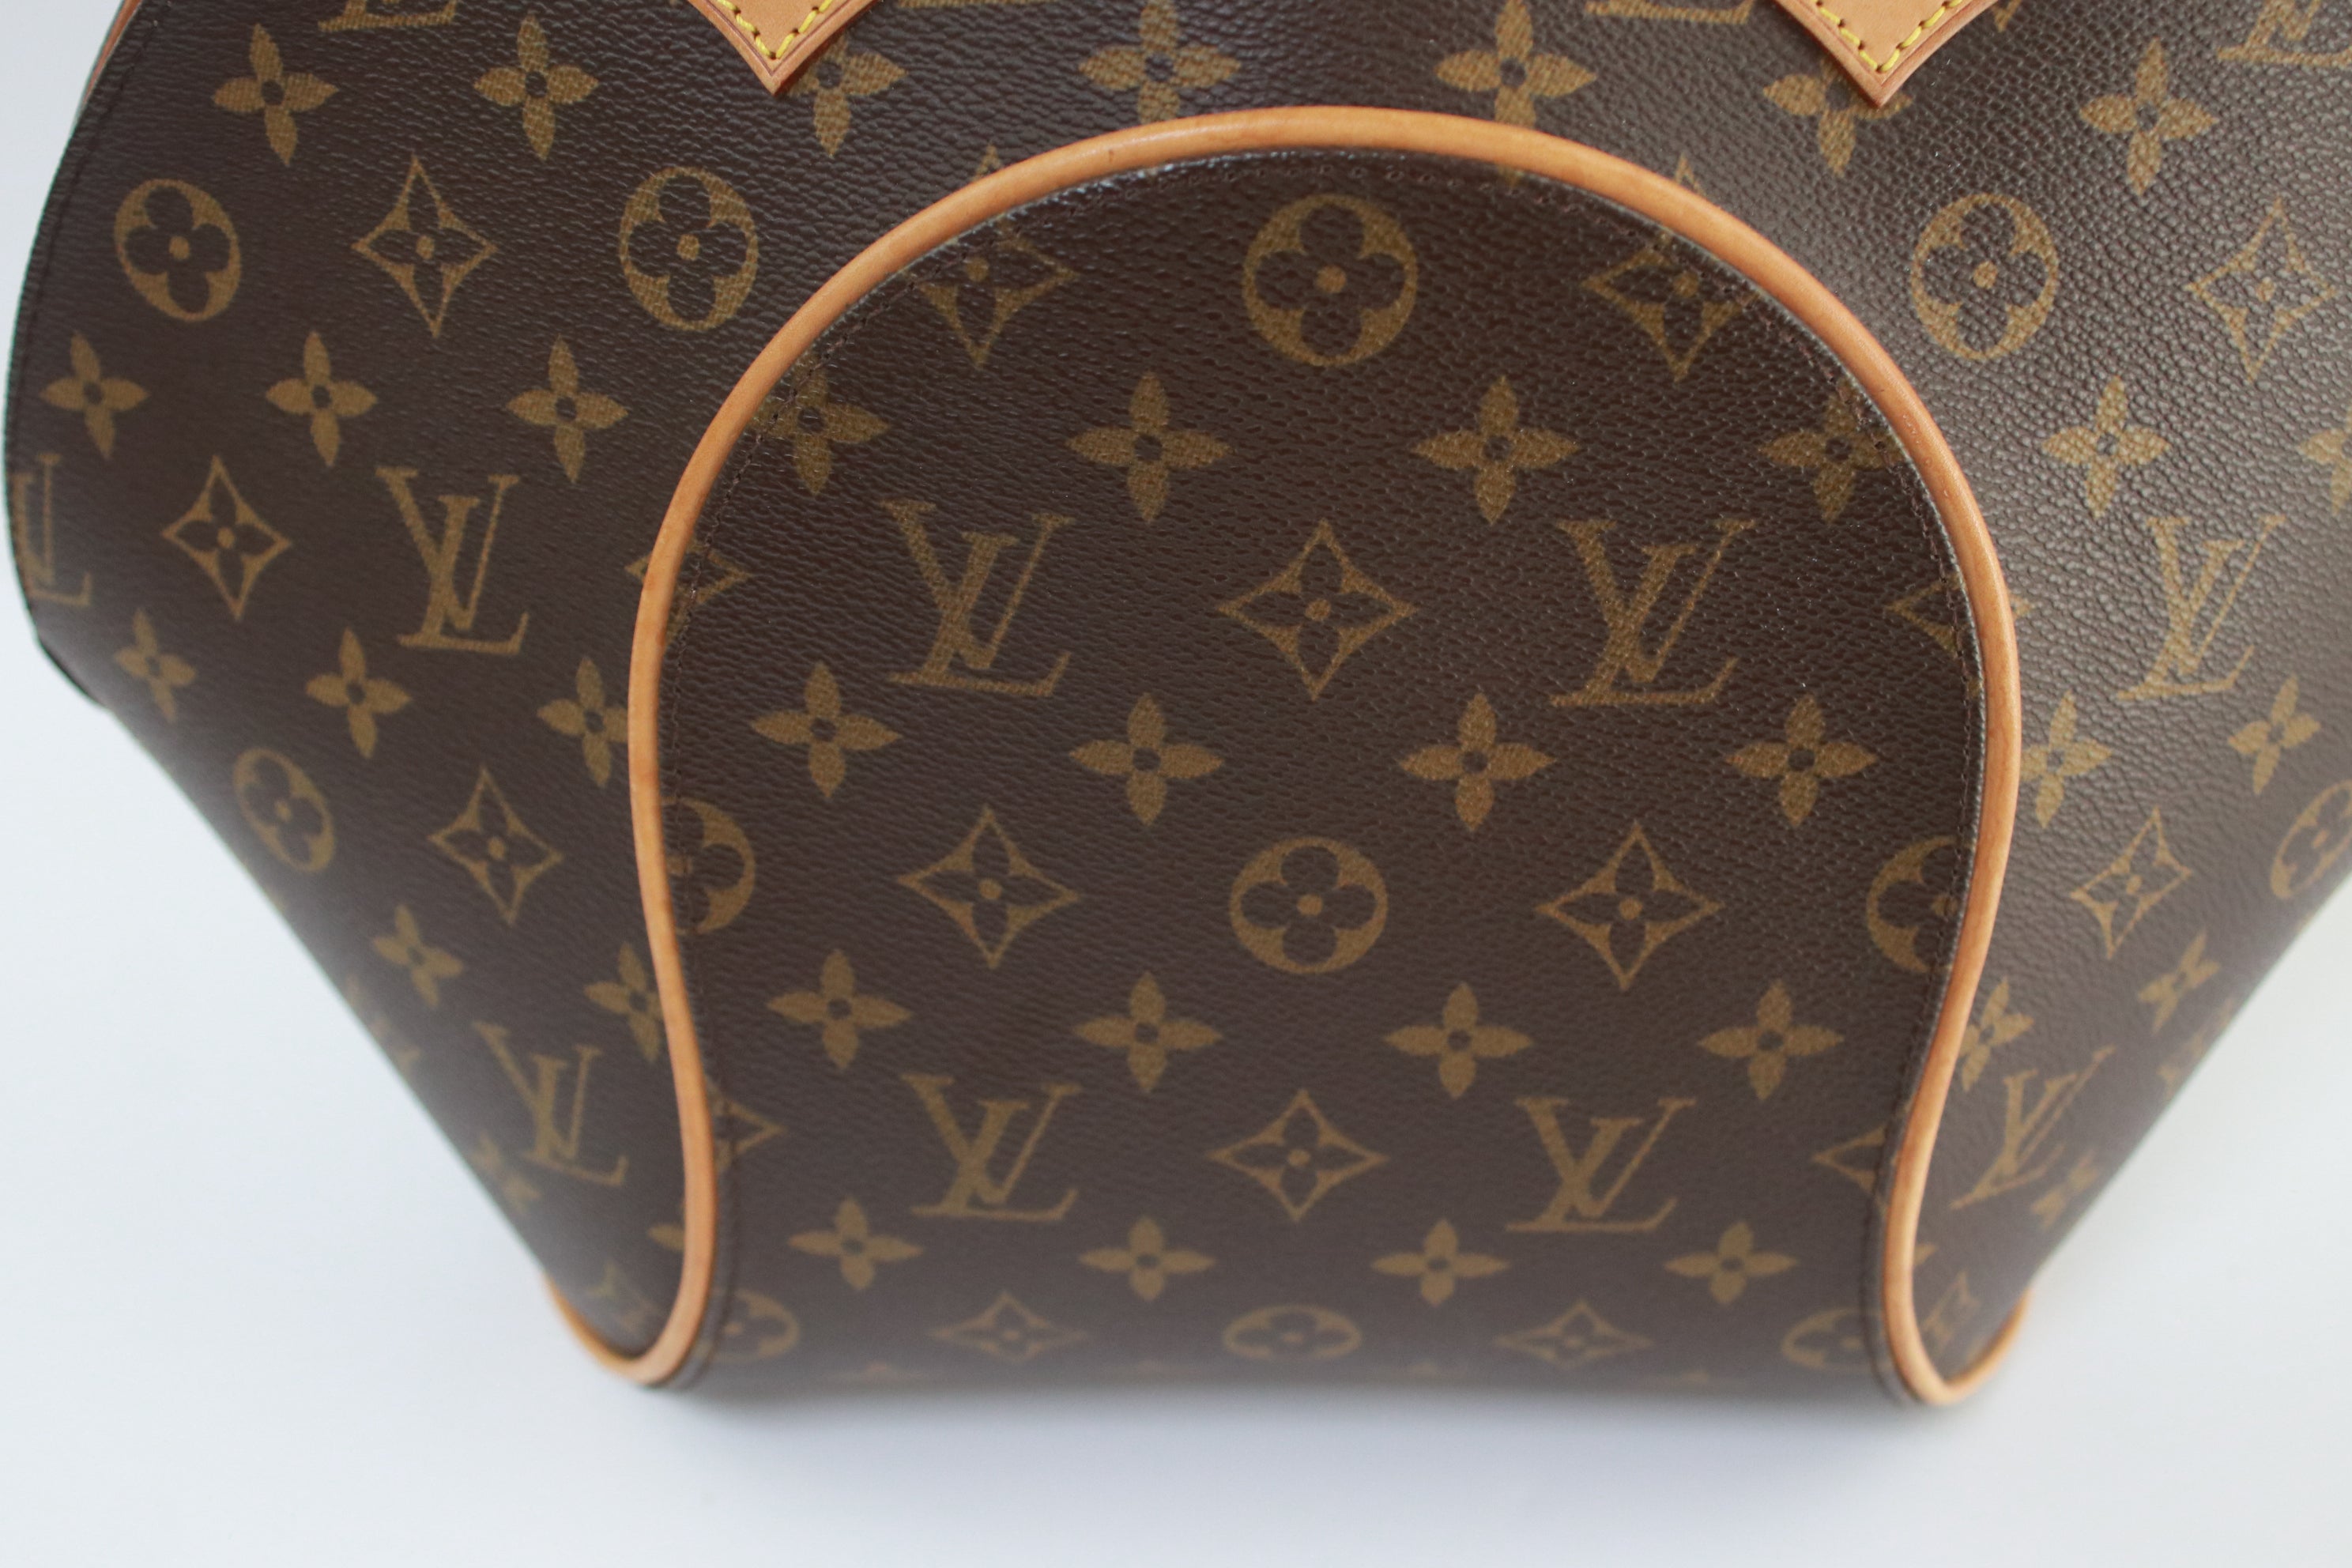 Louis Vuitton, Bags, Louis Vuitton Ellipse Mm Hand Bag